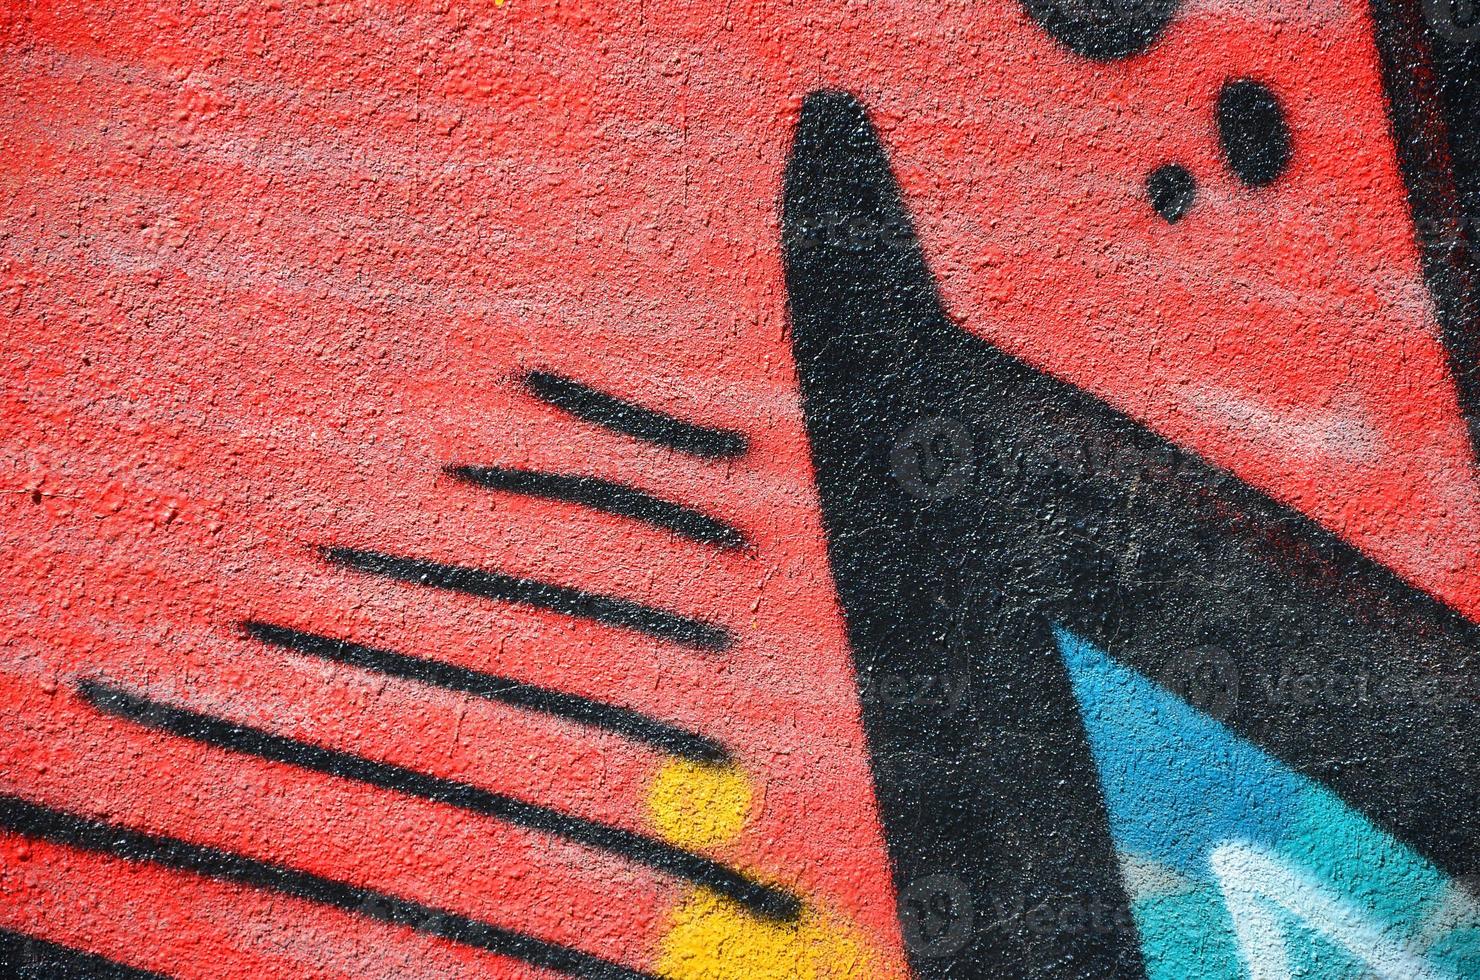 fragmento de un viejo dibujo de graffiti de color en la pared. imagen de fondo como ilustración de arte callejero, vandalismo y pintura mural con pintura en aerosol foto